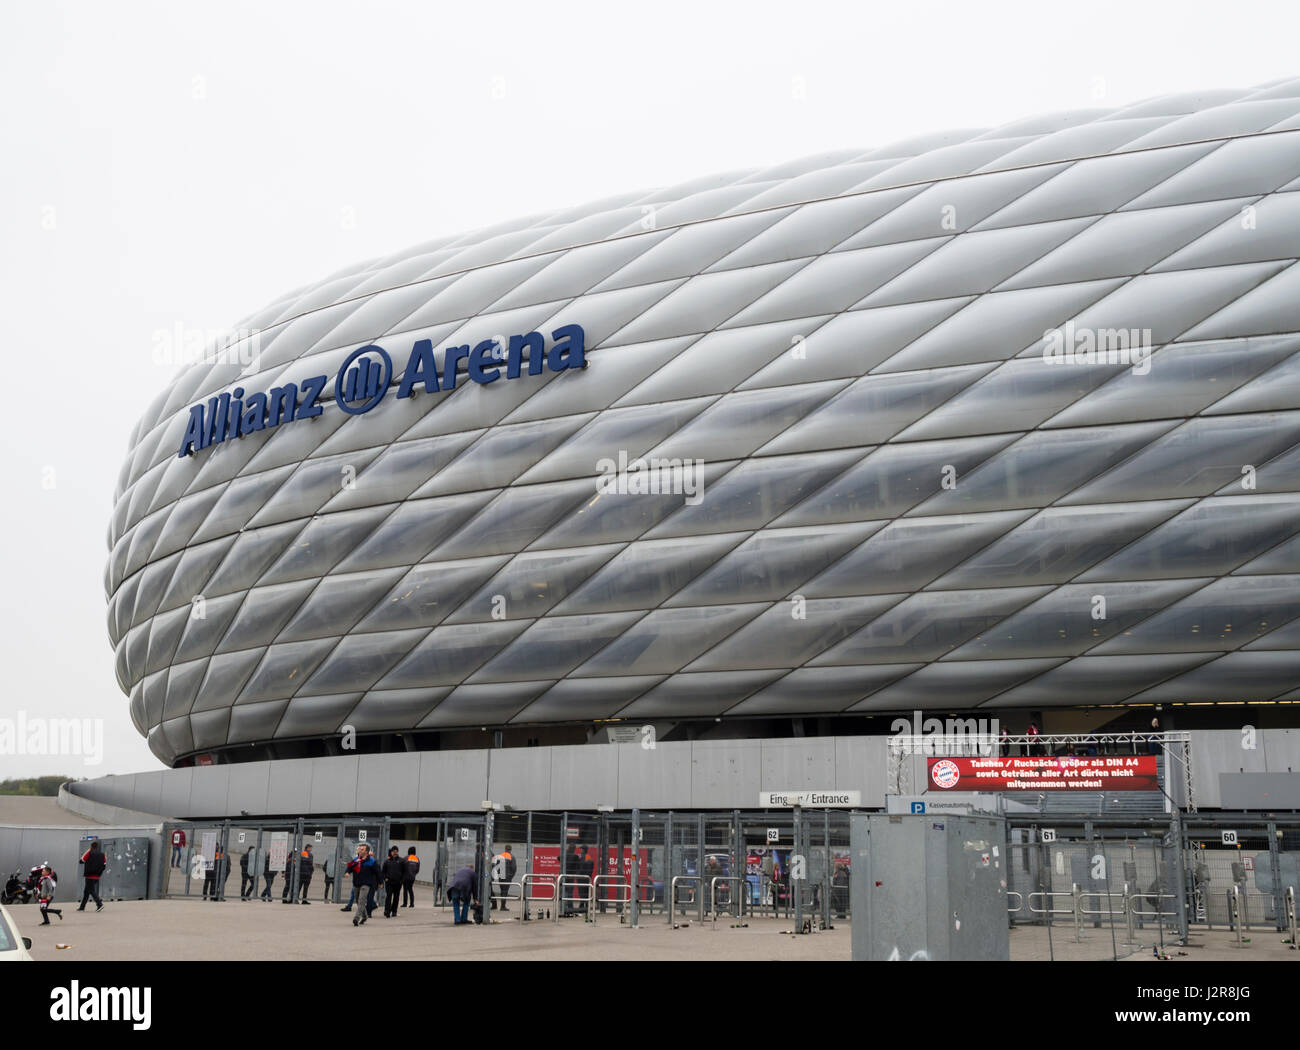 Munich, Allemagne - 22 Avril 2017 : les fans de football sont entrer dans le stade de football Allianz Arena de Munich, en Allemagne. Avec 75'000 places, Allianz Arena est Banque D'Images